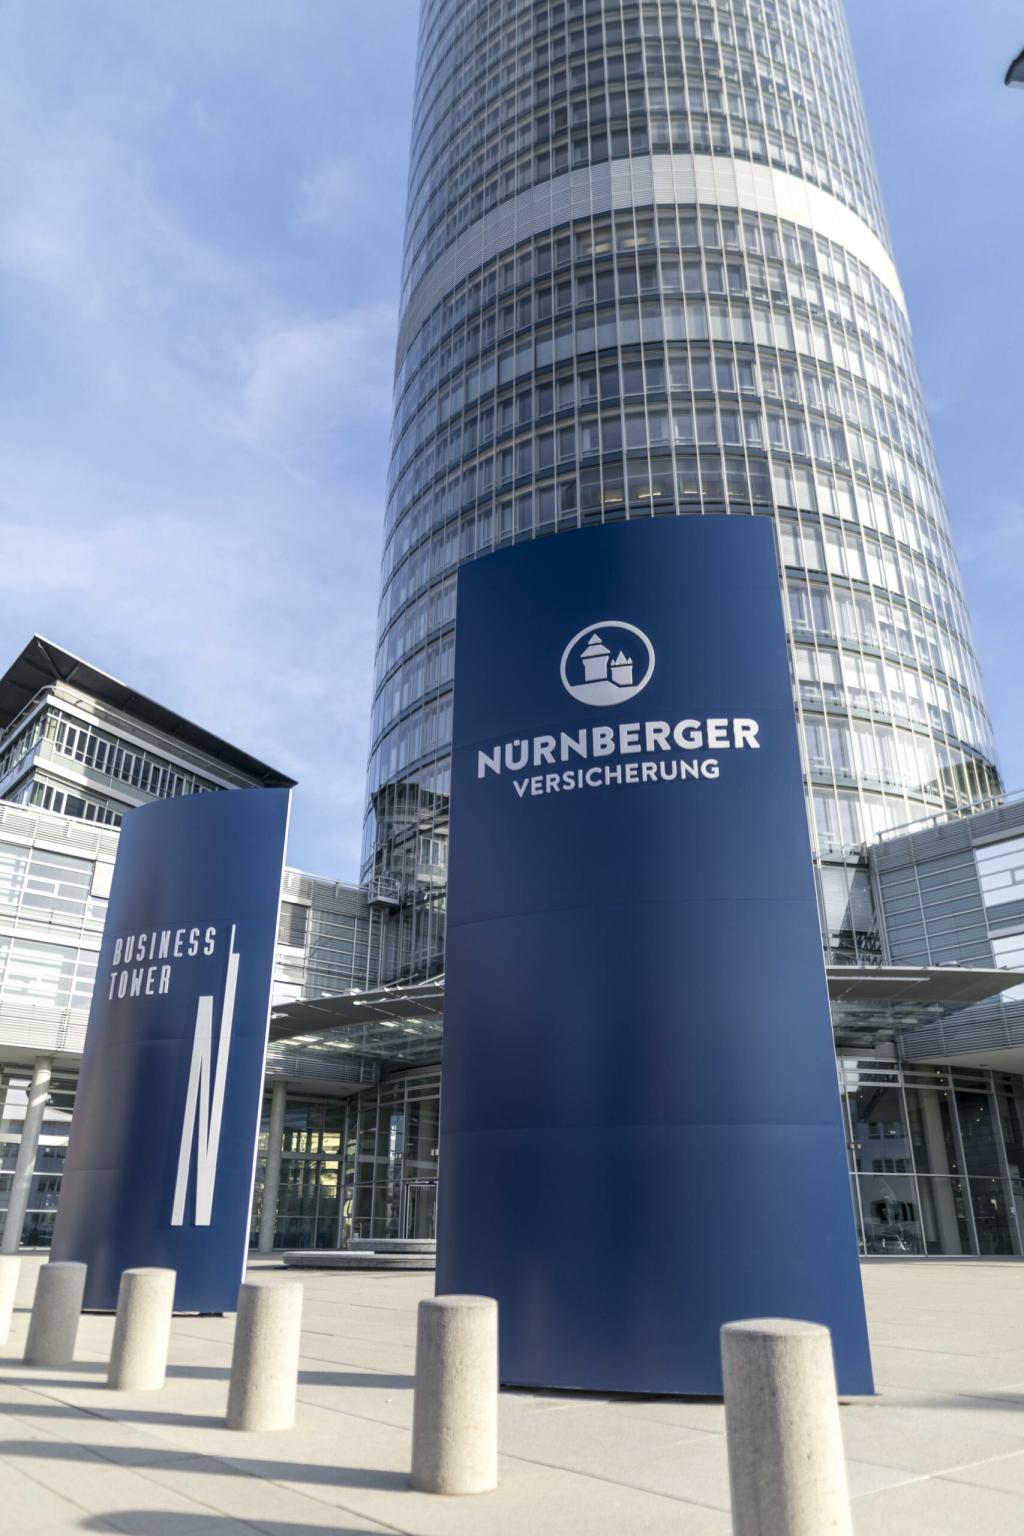 Nürnberger Versicherung buys Getsurance